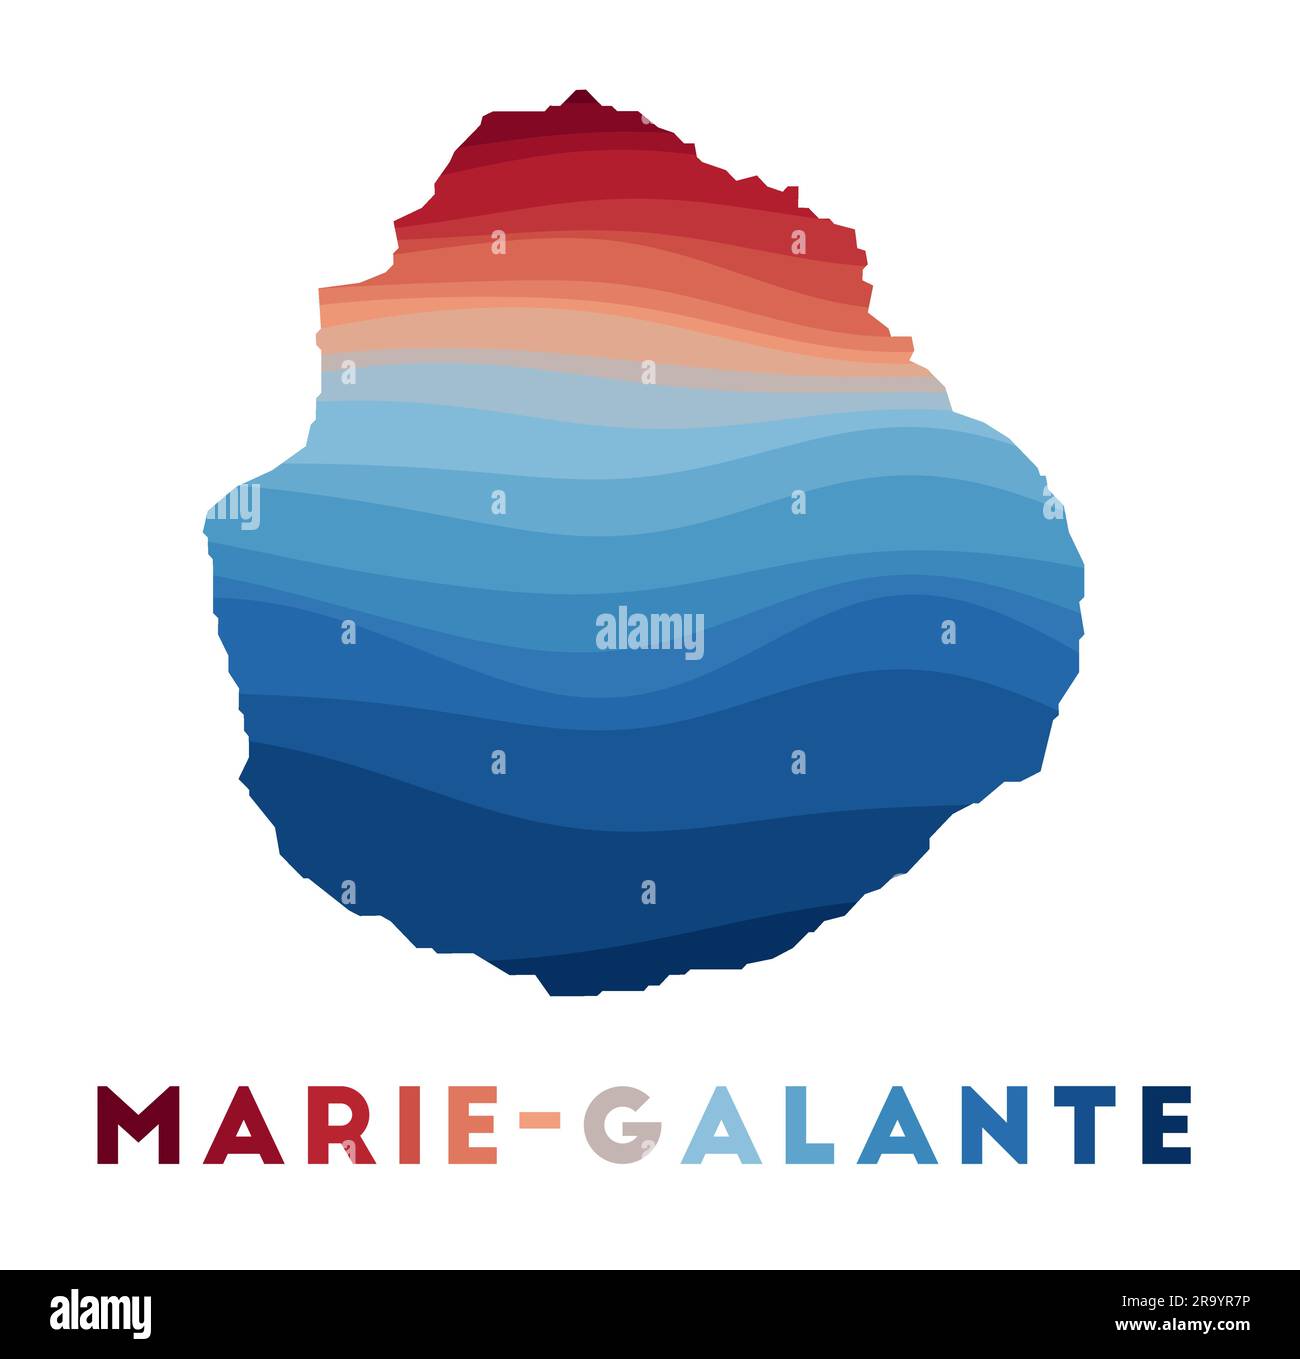 Carte Marie-Galante. Carte de l'île avec de belles vagues géométriques dans les couleurs bleu rouge. Forme Marie-Galante éclatante. Illustration vectorielle. Illustration de Vecteur